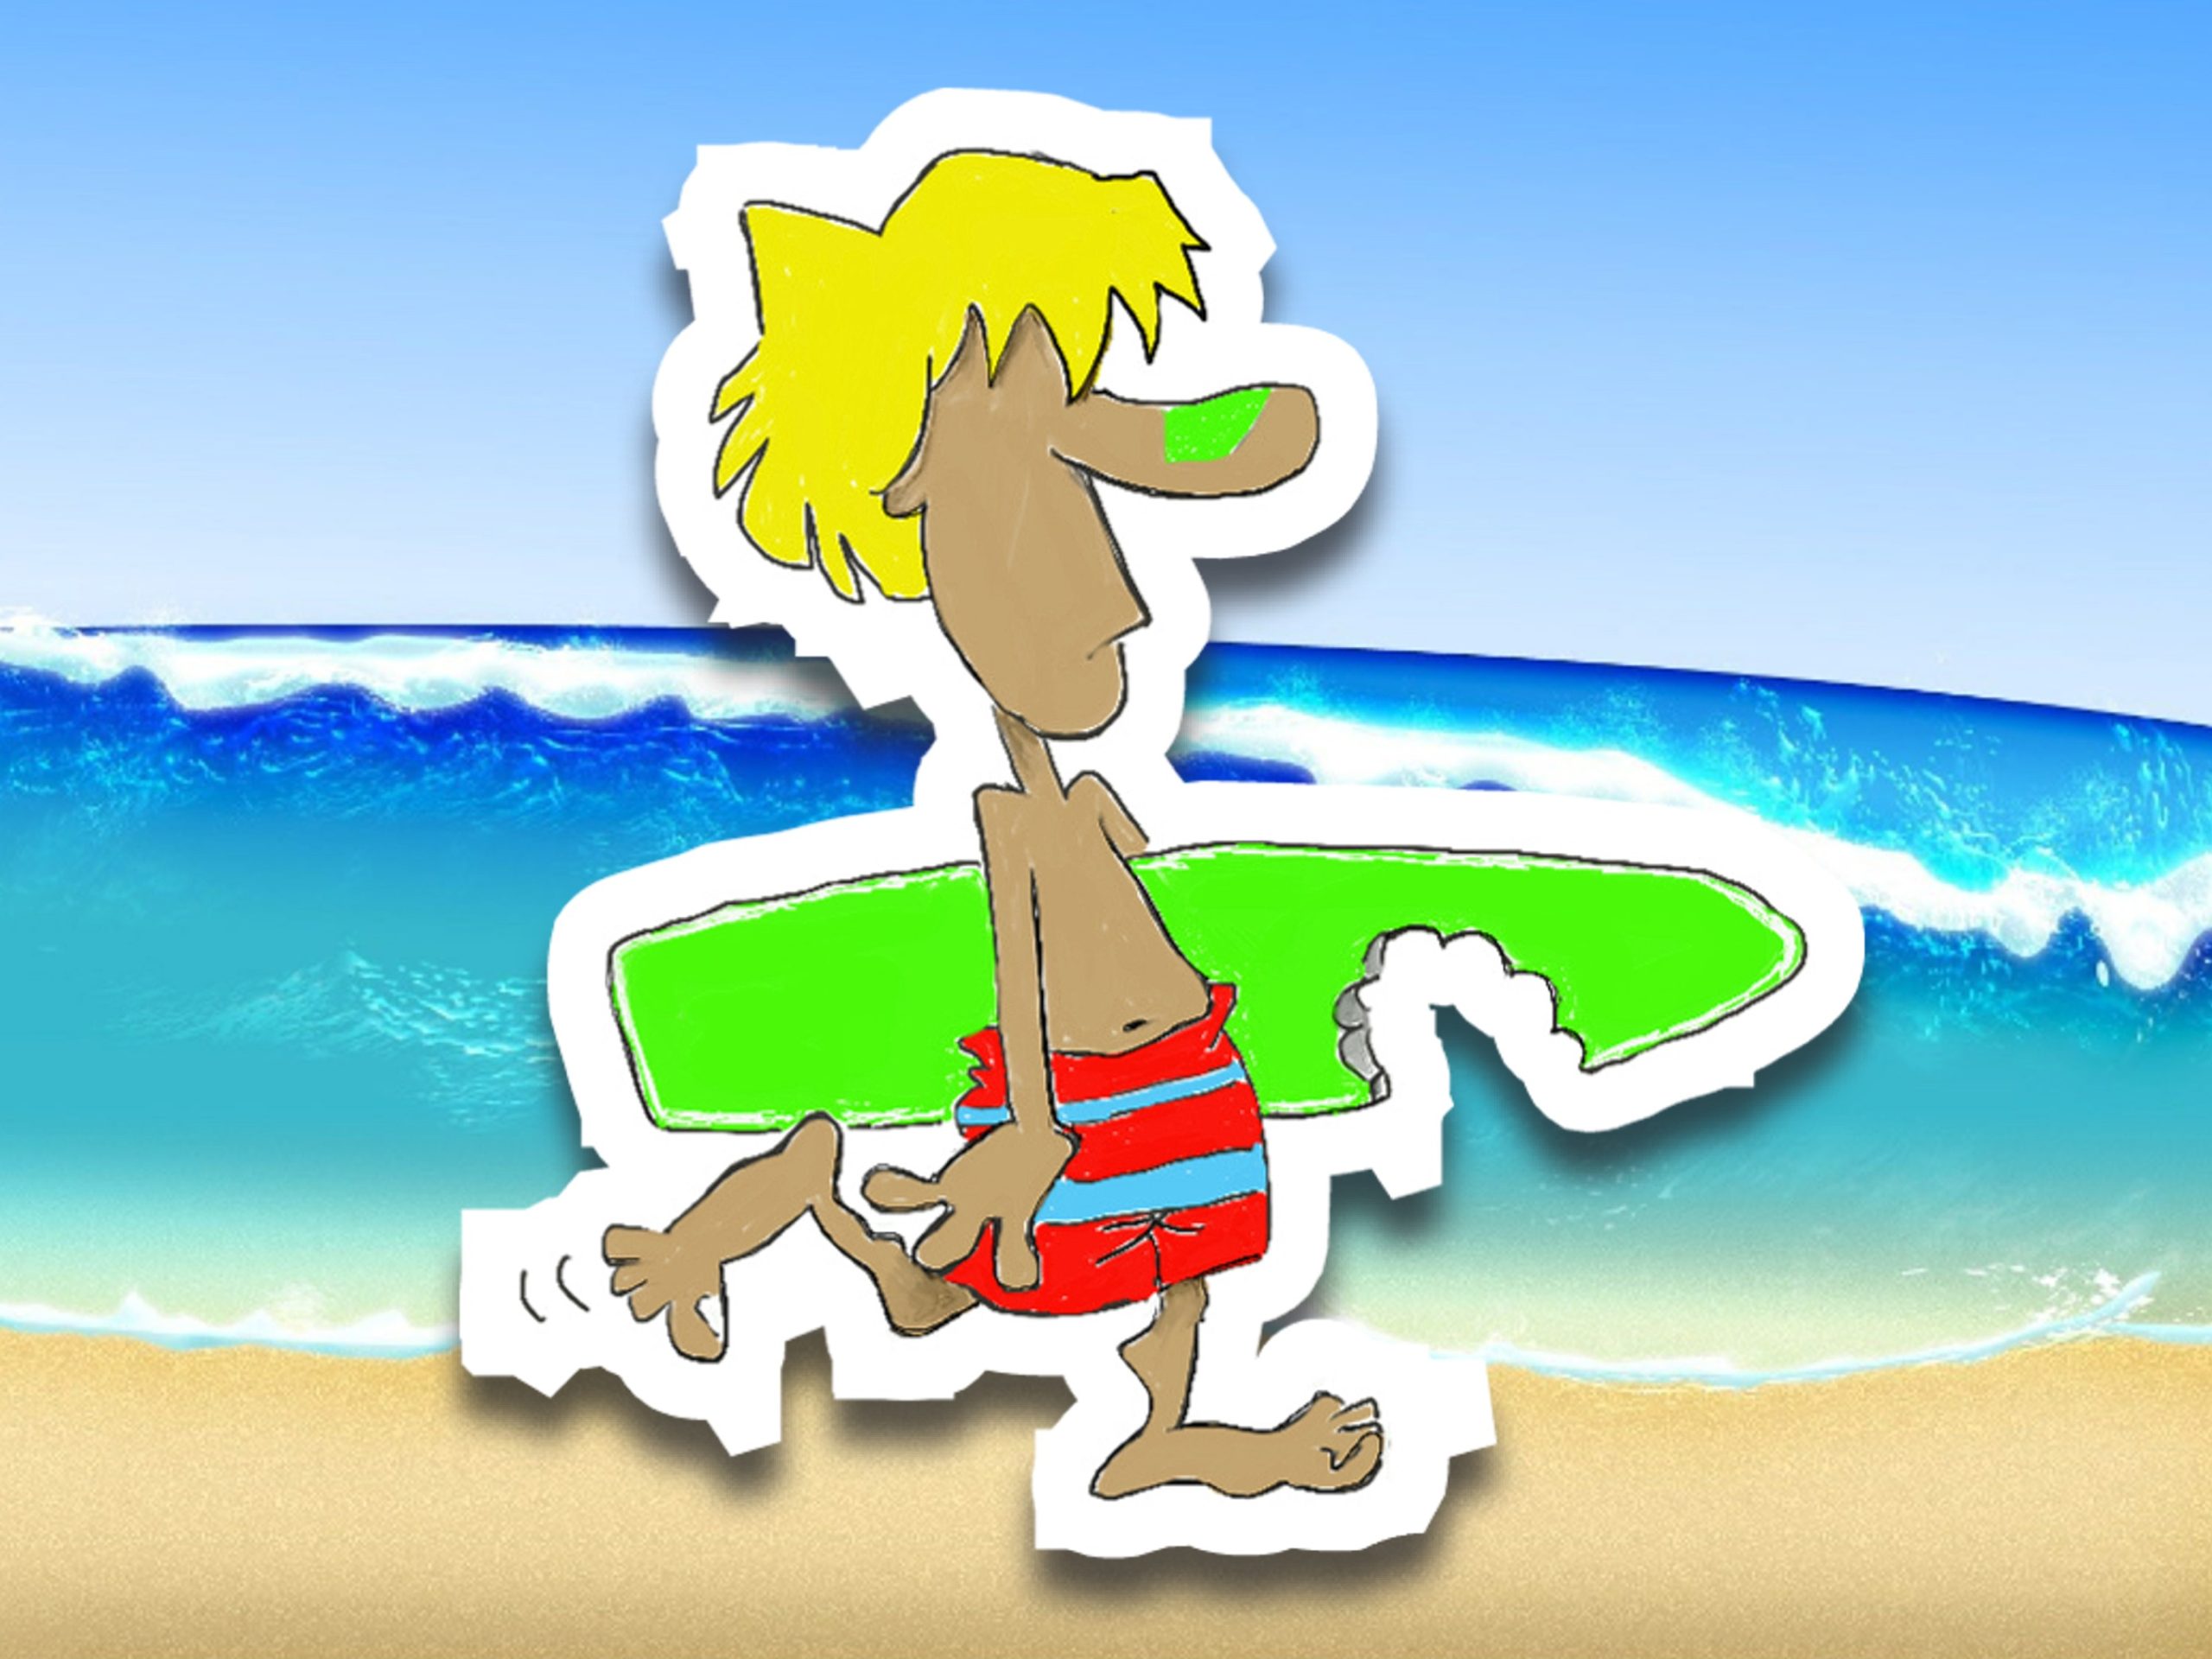 Die Cut Vinyl “Surfer Strut” Sticker